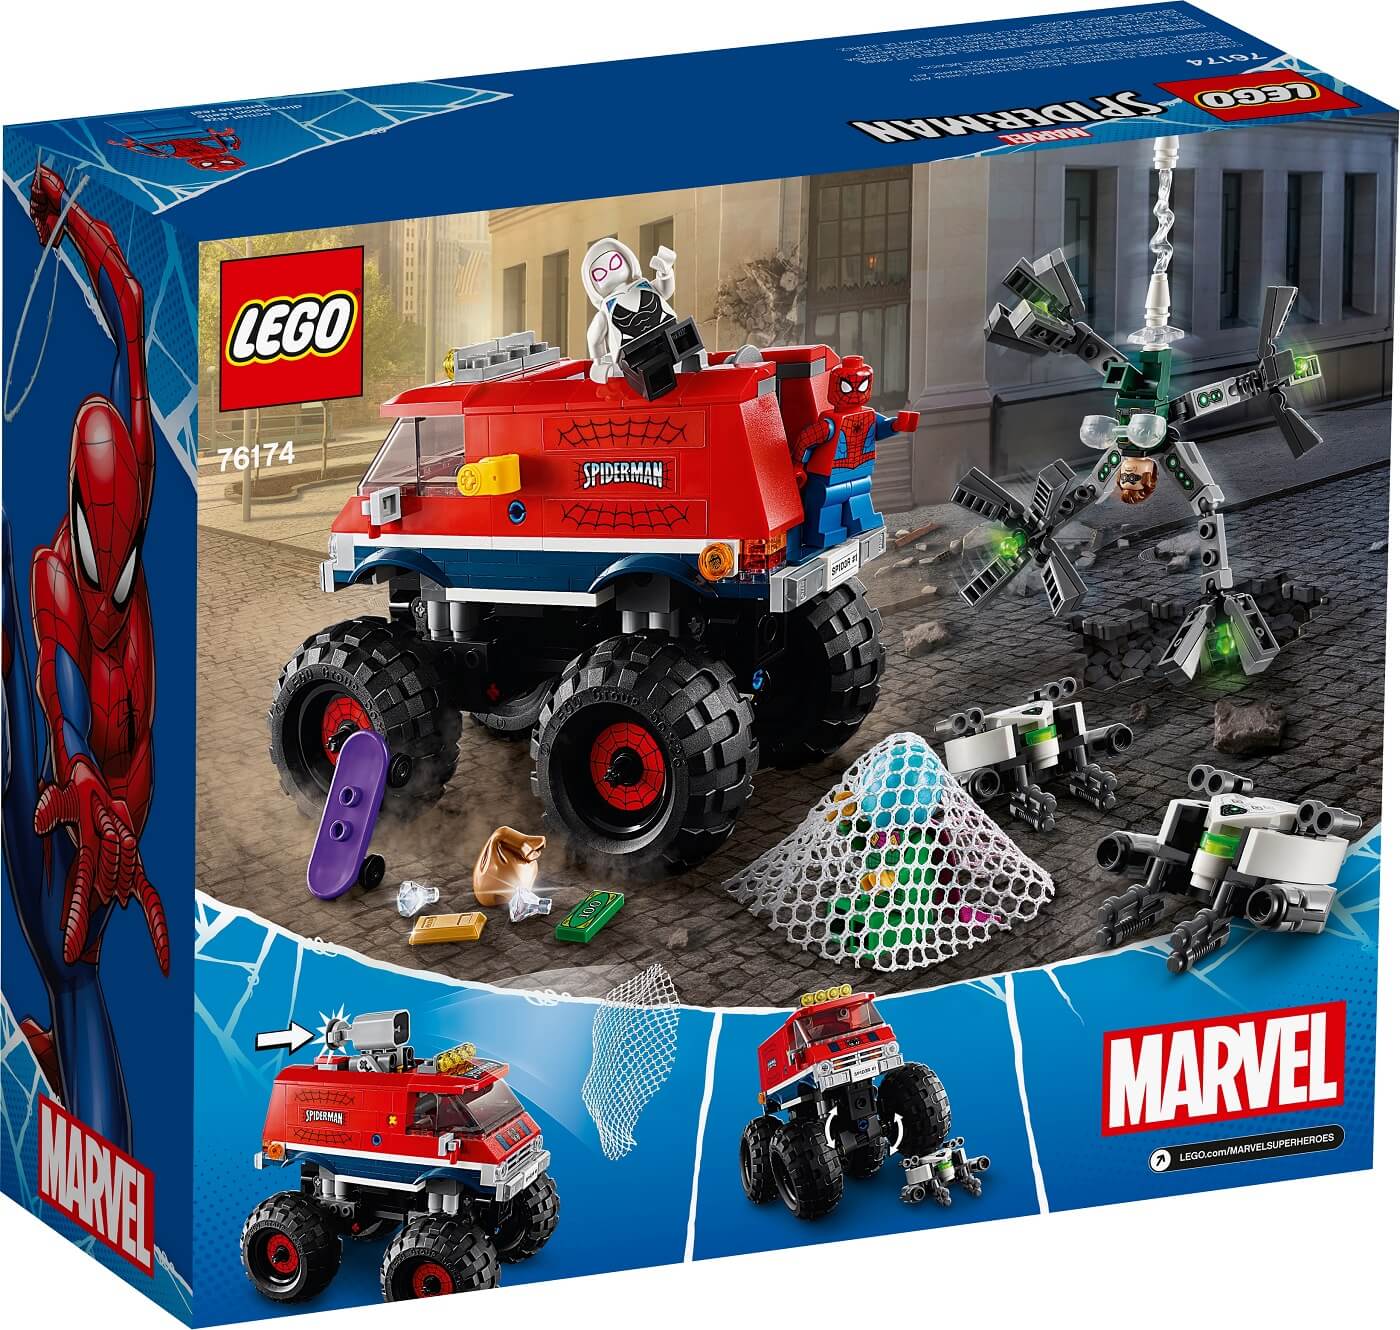 Monster Truck de SpiderMan vs Mysterio ( Lego 76174 ) imagen e